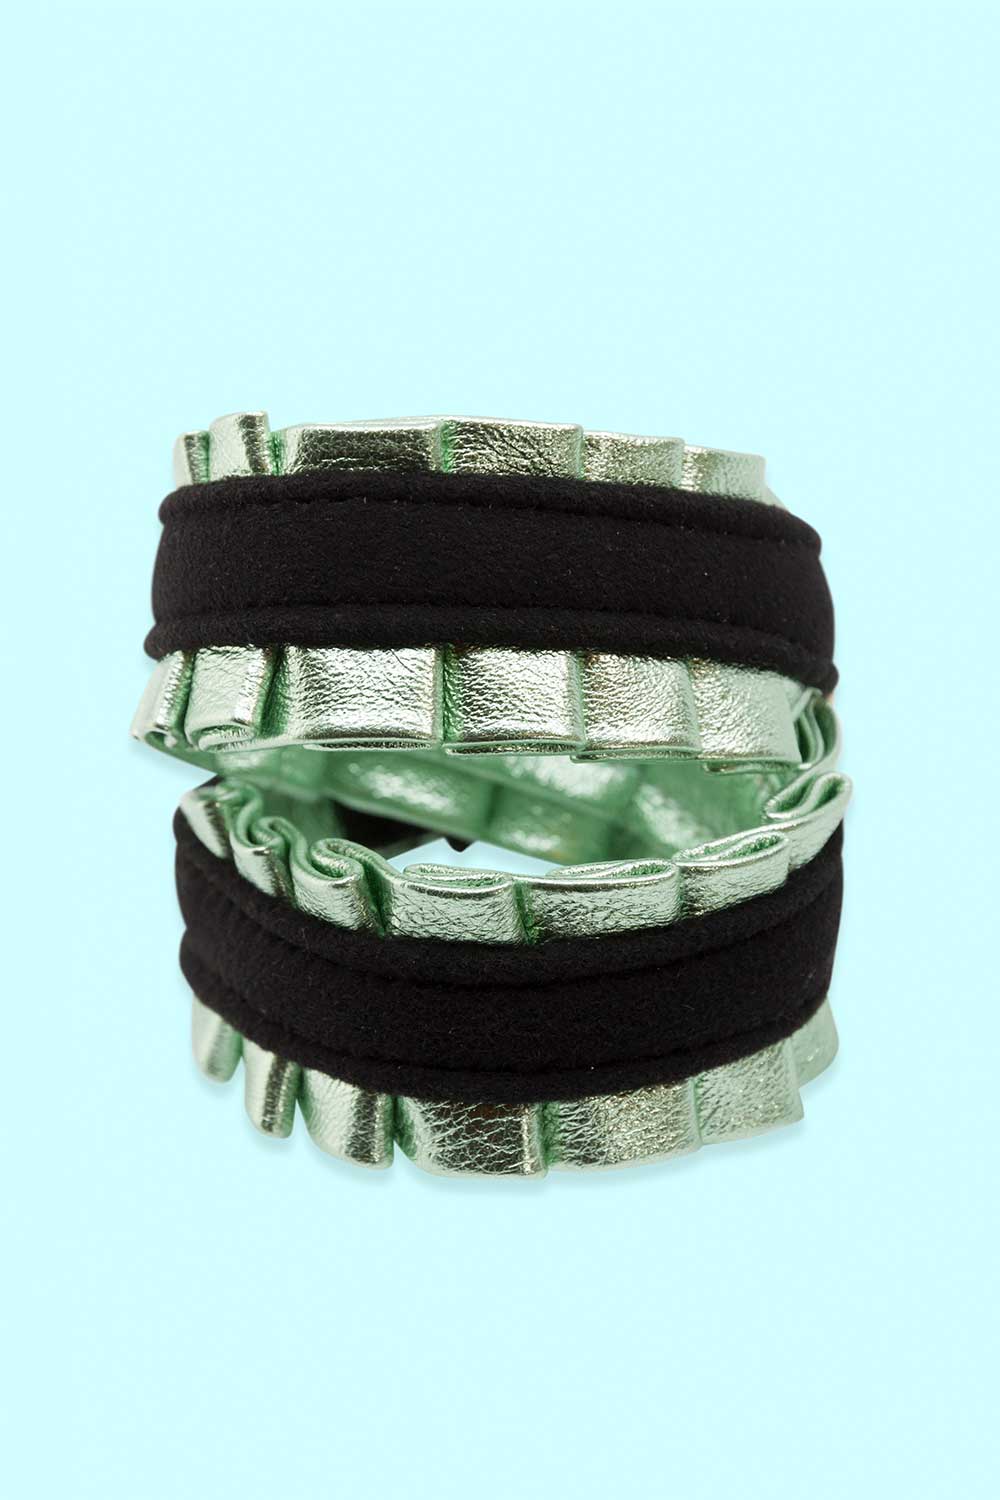 Produktbild Armband aus Leder mit grün glänzender Rüsche von FederRock